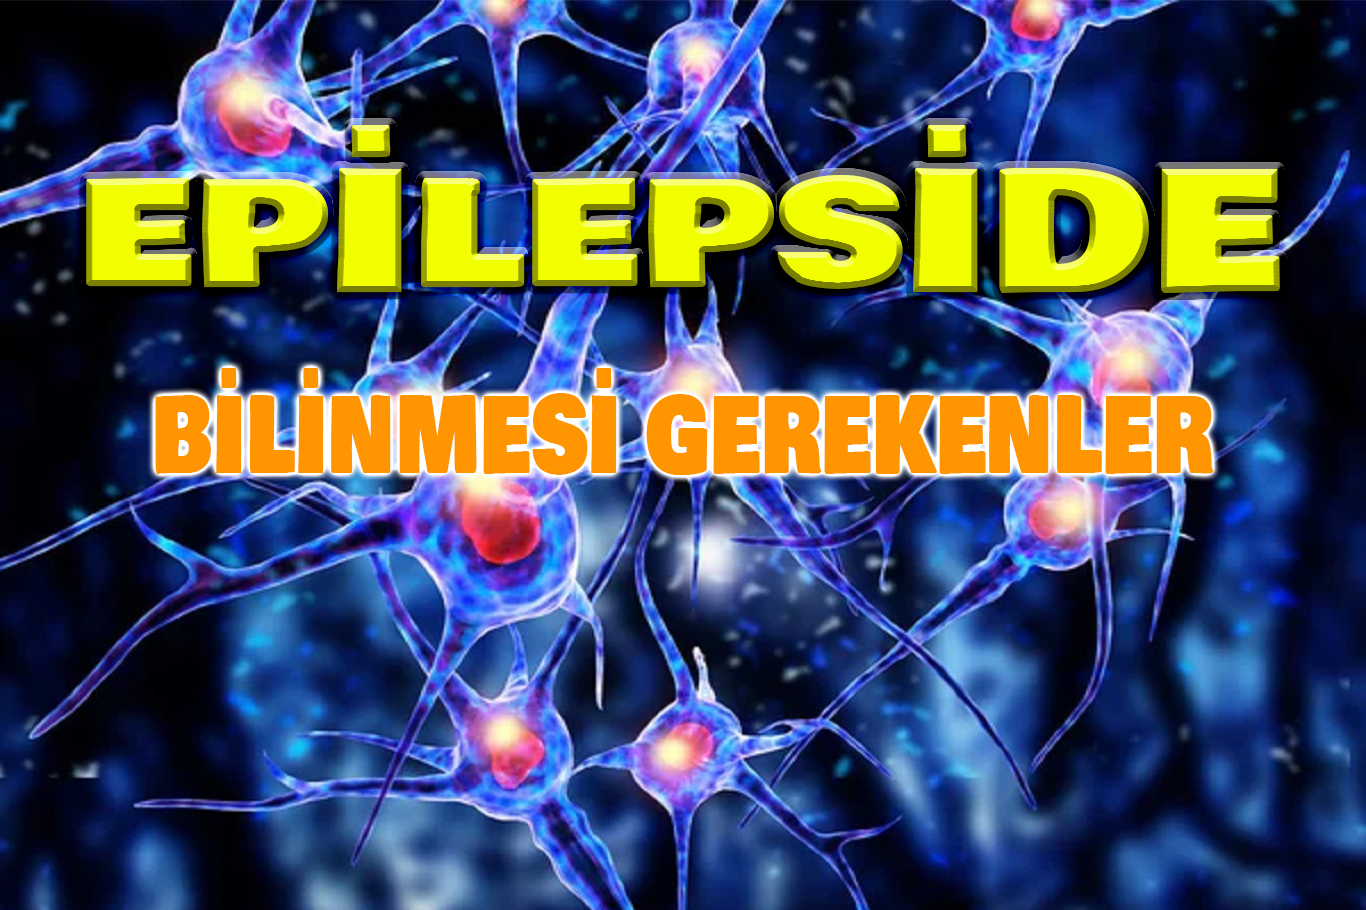 Epilepsi hastalığı ve epilepsi pili hakkında bilinmesi gerekenler